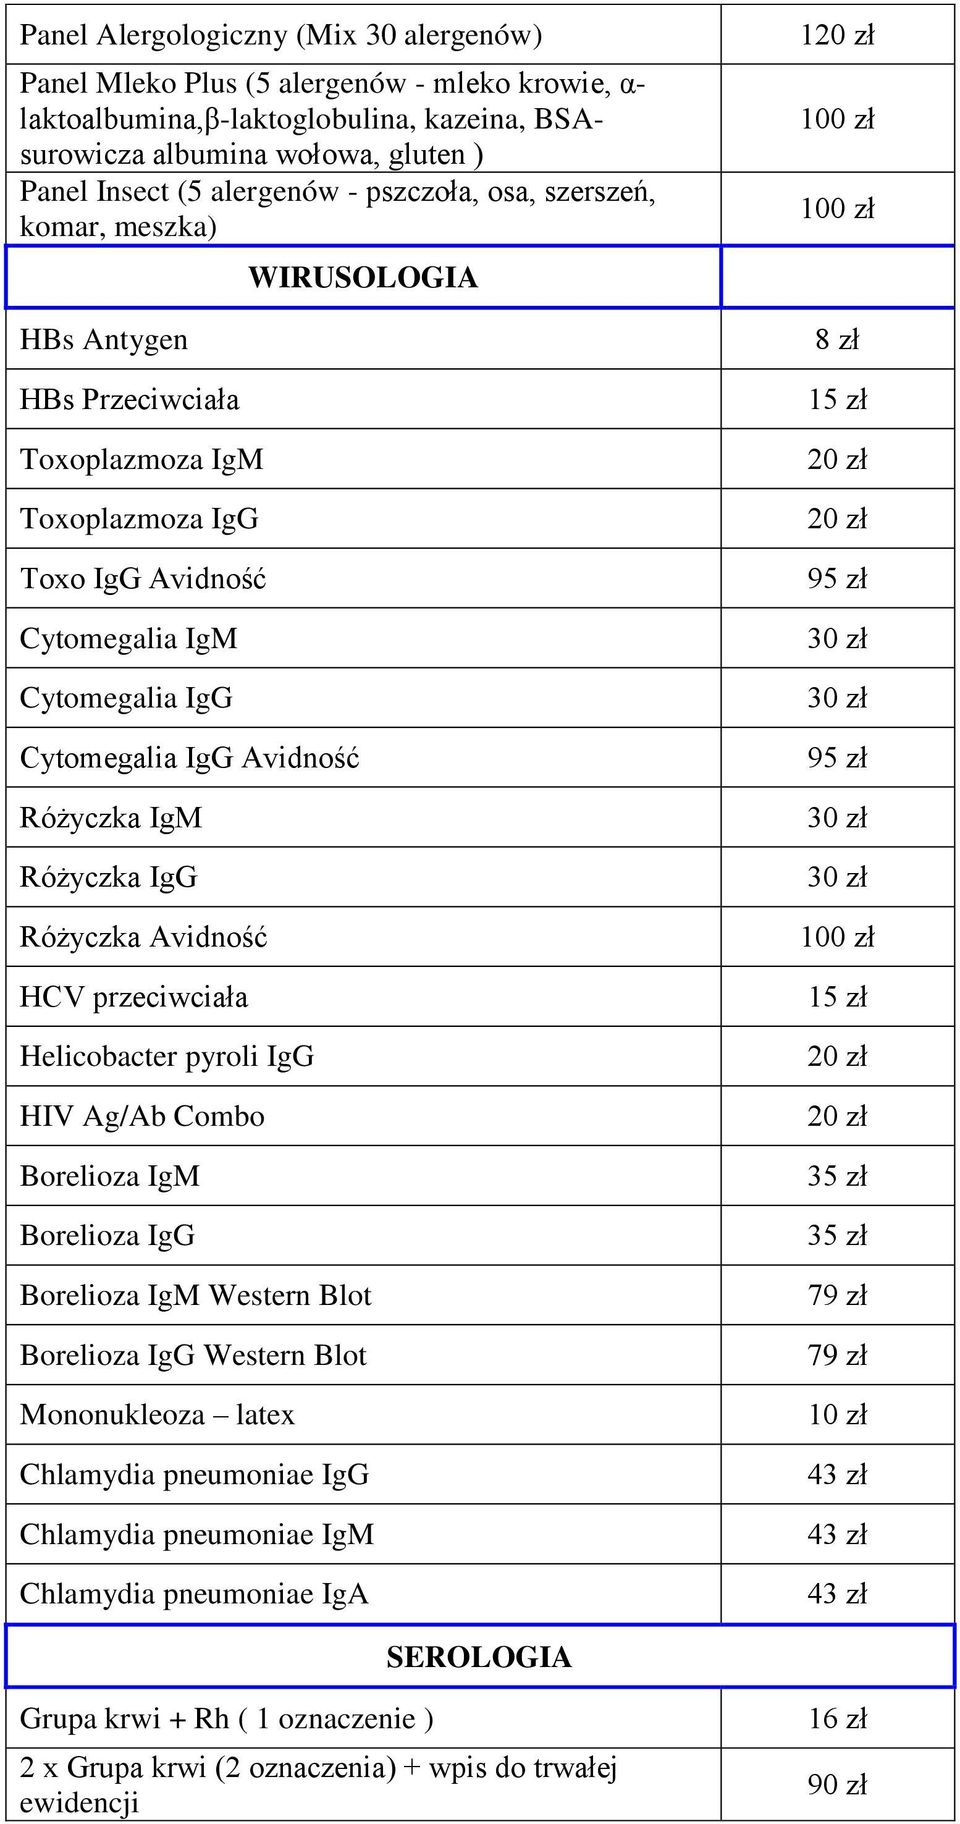 IgG Różyczka Avidność HCV przeciwciała Helicobacter pyroli IgG HIV Ag/Ab Combo Borelioza IgM Borelioza IgG WIRUSOLOGIA Borelioza IgM Western Blot Borelioza IgG Western Blot Mononukleoza latex